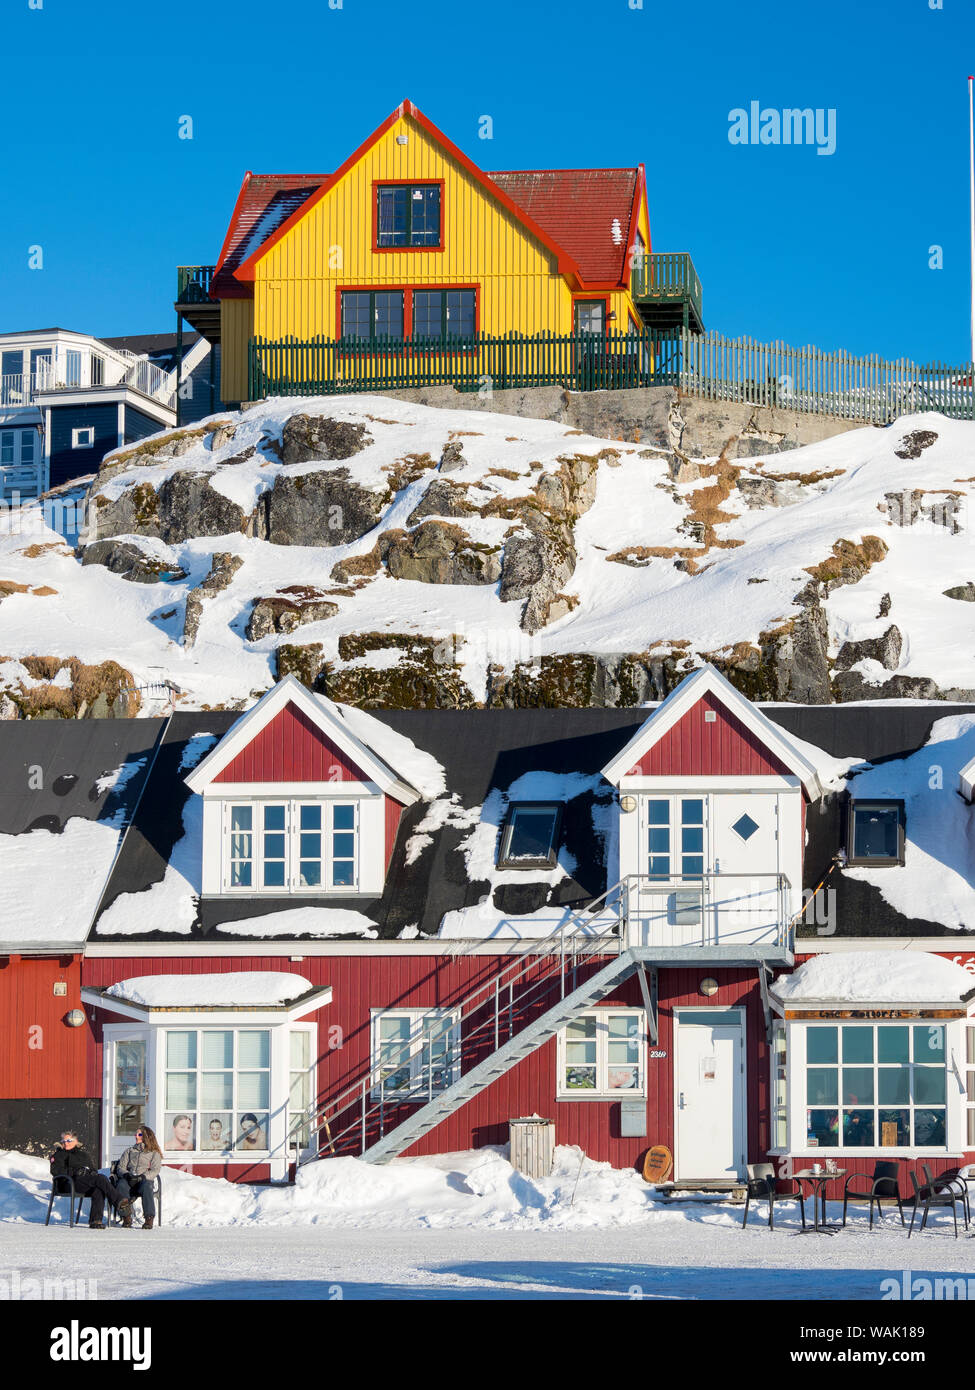 La vieille ville, Nuuk, capitale du Groenland. (Usage éditorial uniquement) Banque D'Images